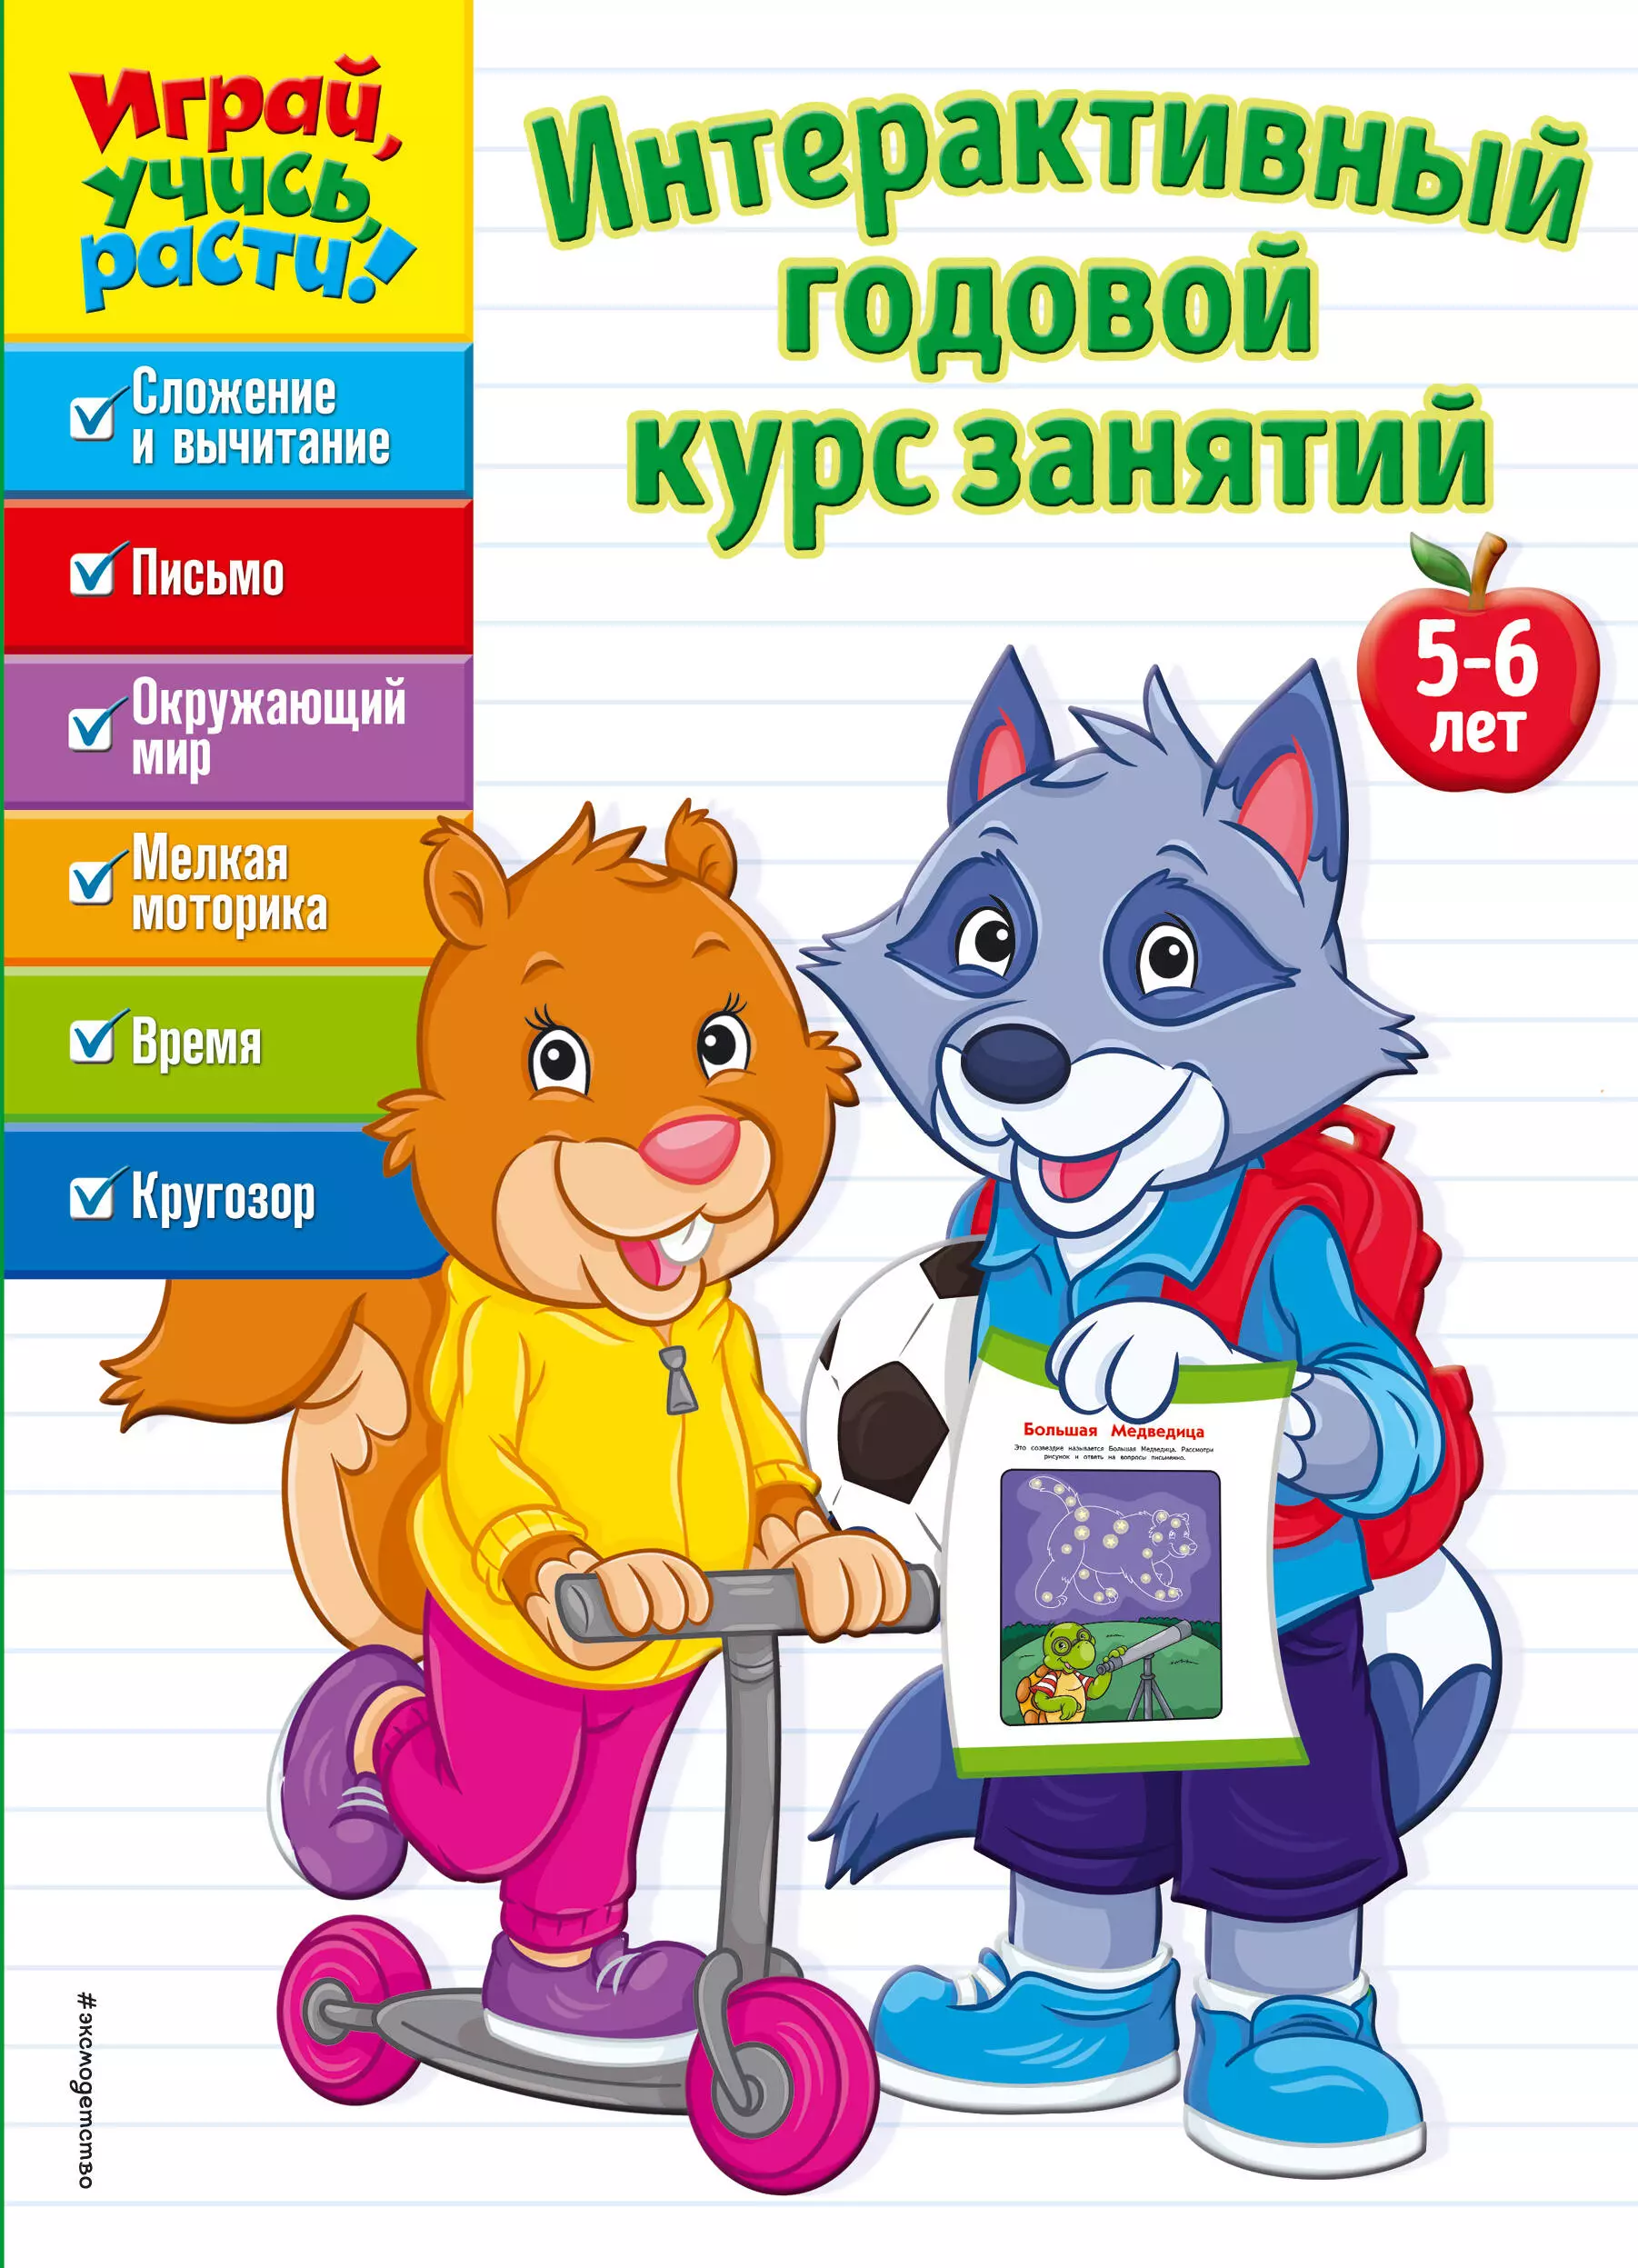  - Интерактивный годовой курс занятий: для детей 5-6 лет